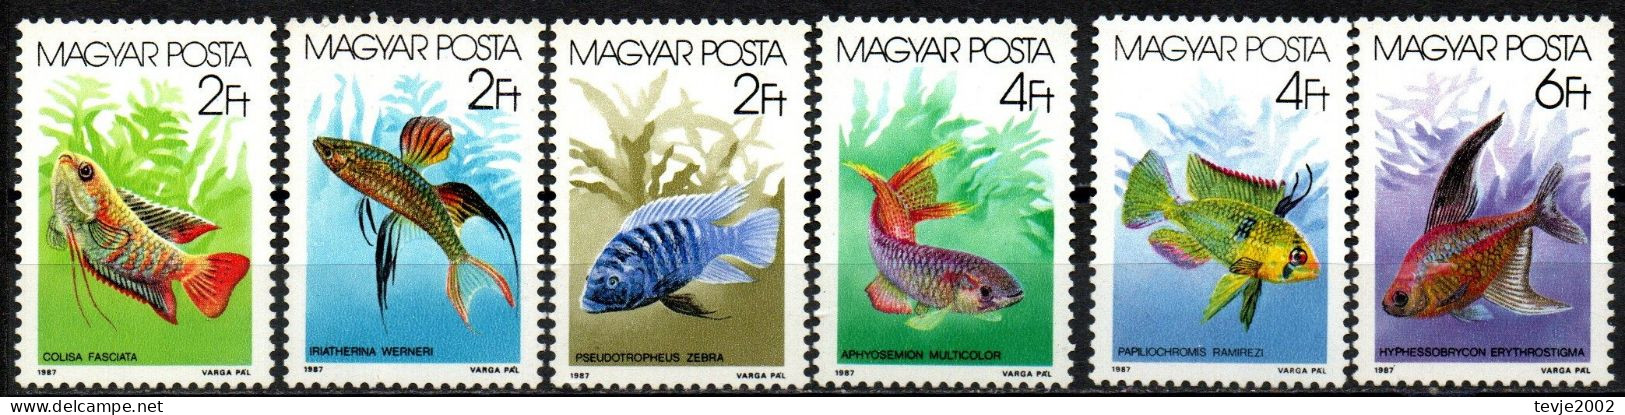 Ungarn 1987 - Mi.Nr. 3877 - 3882 A - Postfrisch MNH - Tiere Animals Fische Fishes - Fische